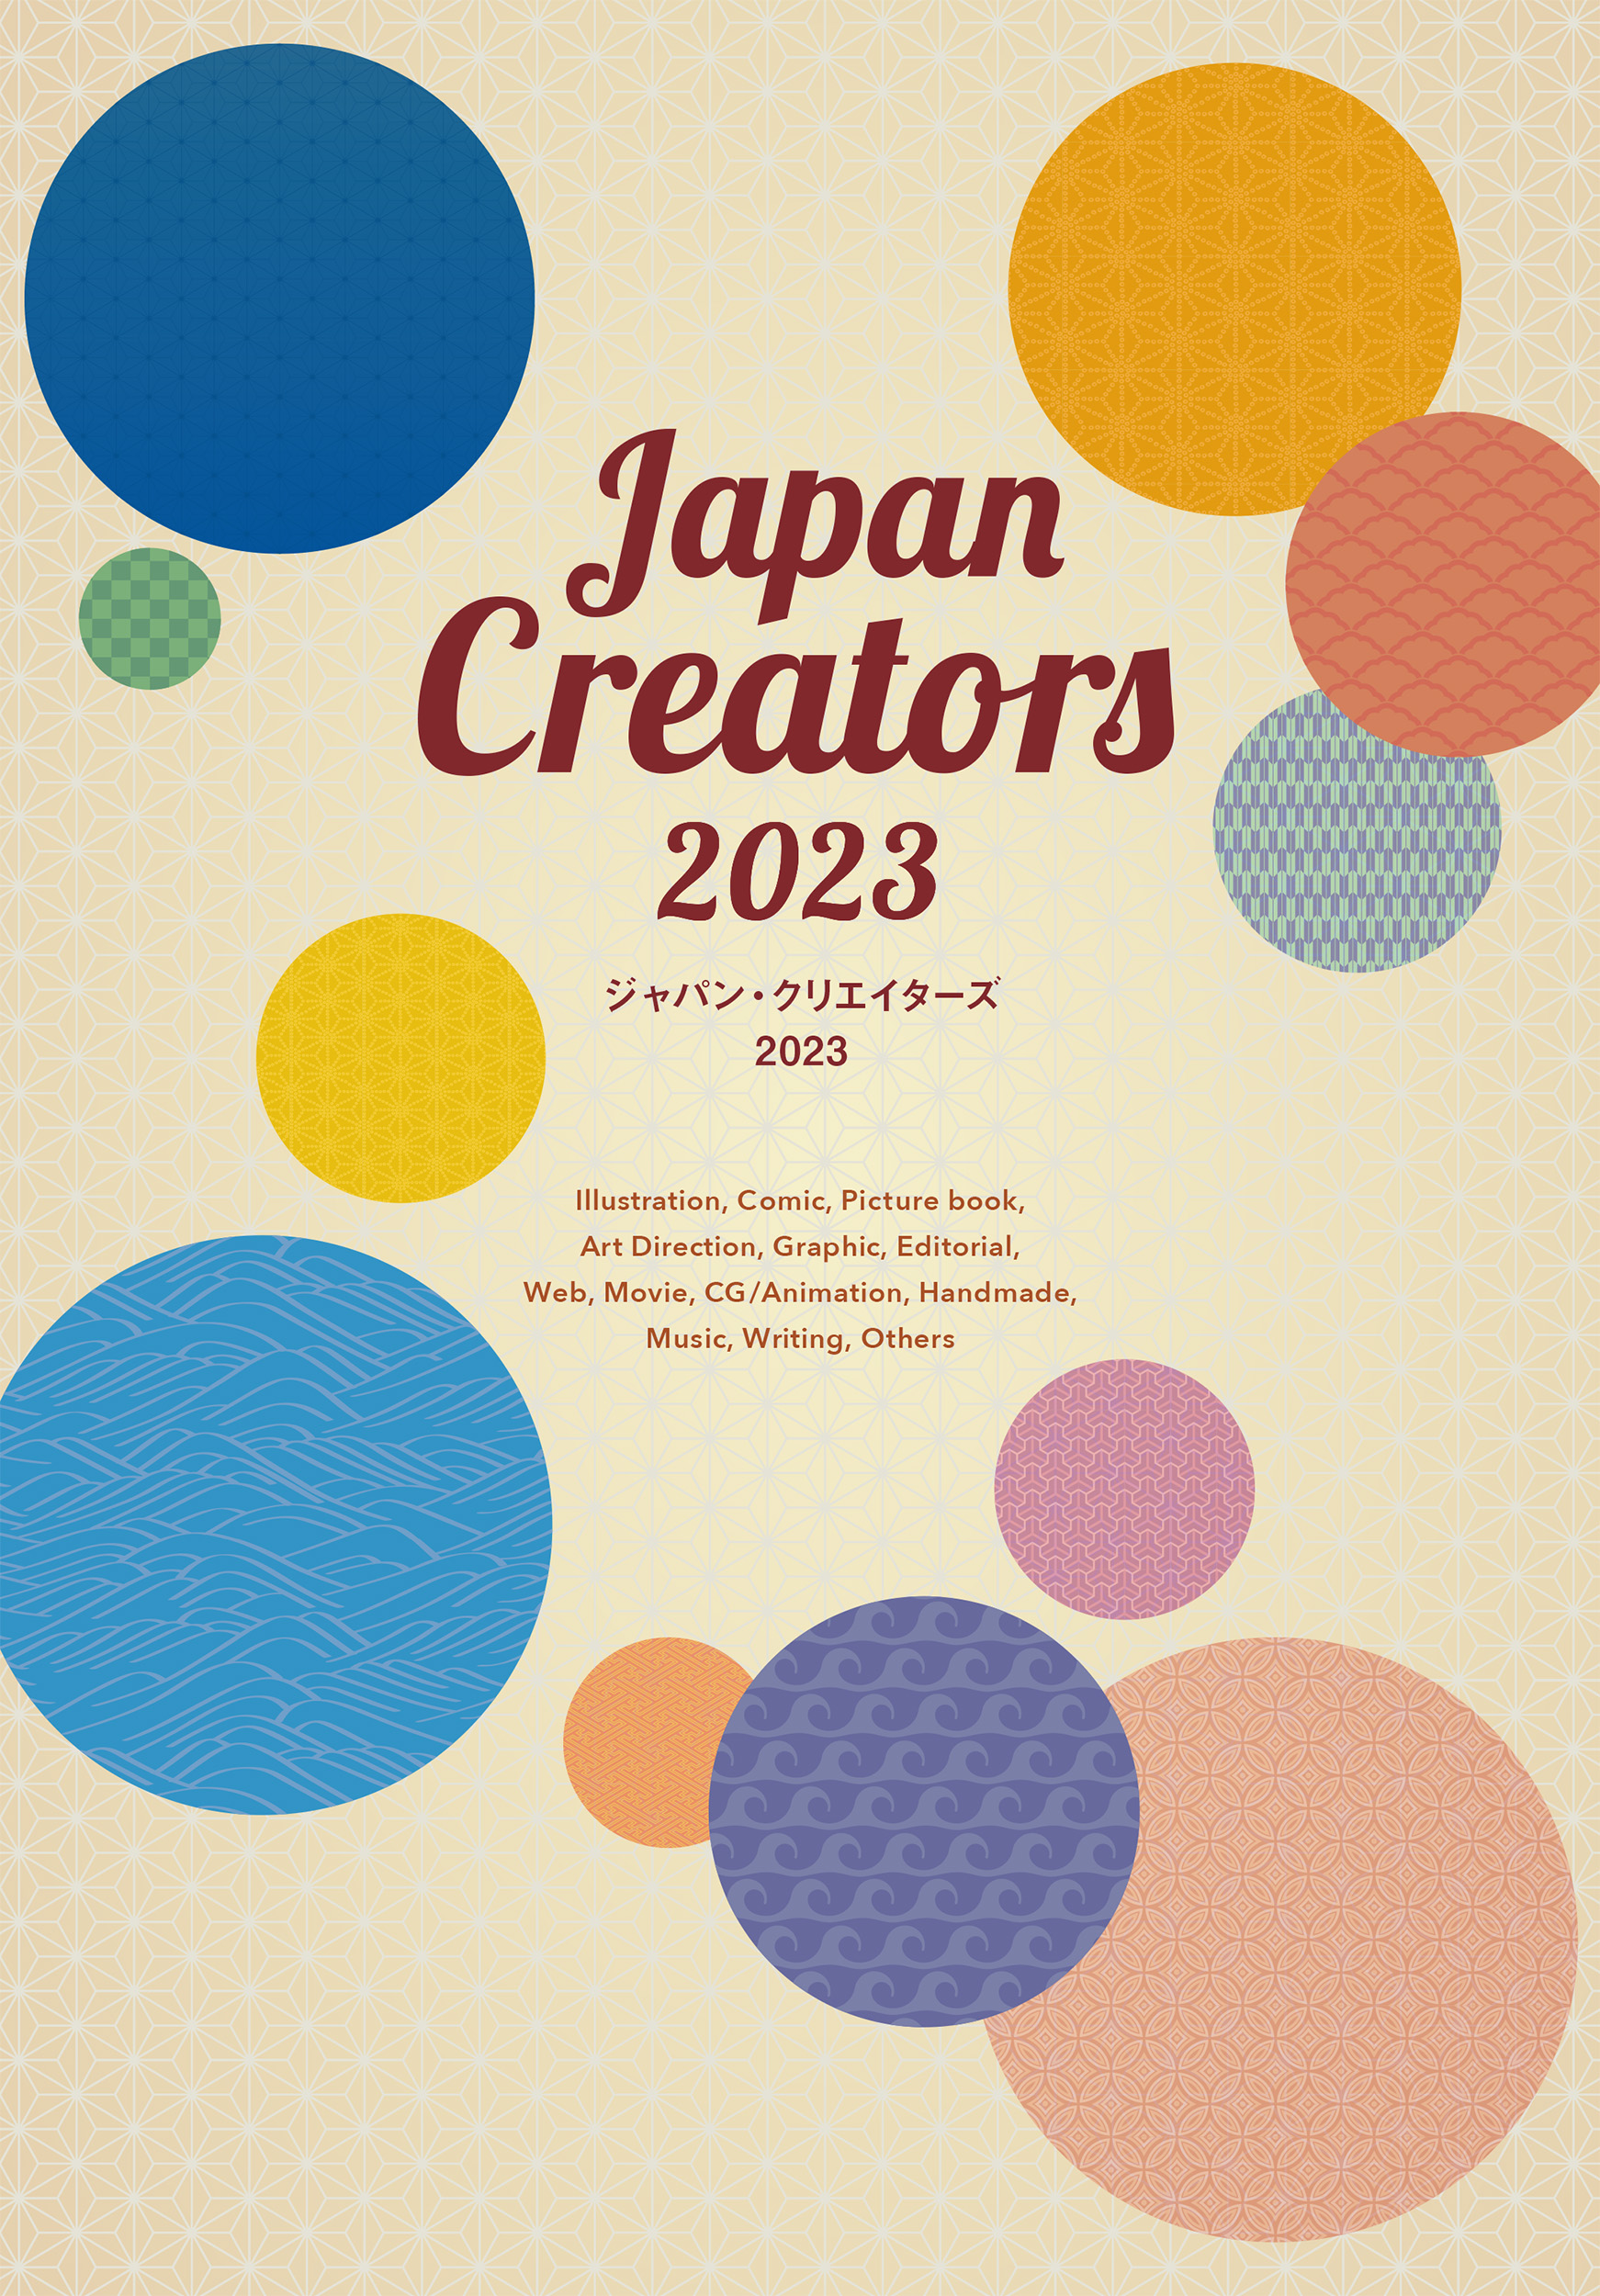 ジャパン・クリエイターズ 2023の商品画像